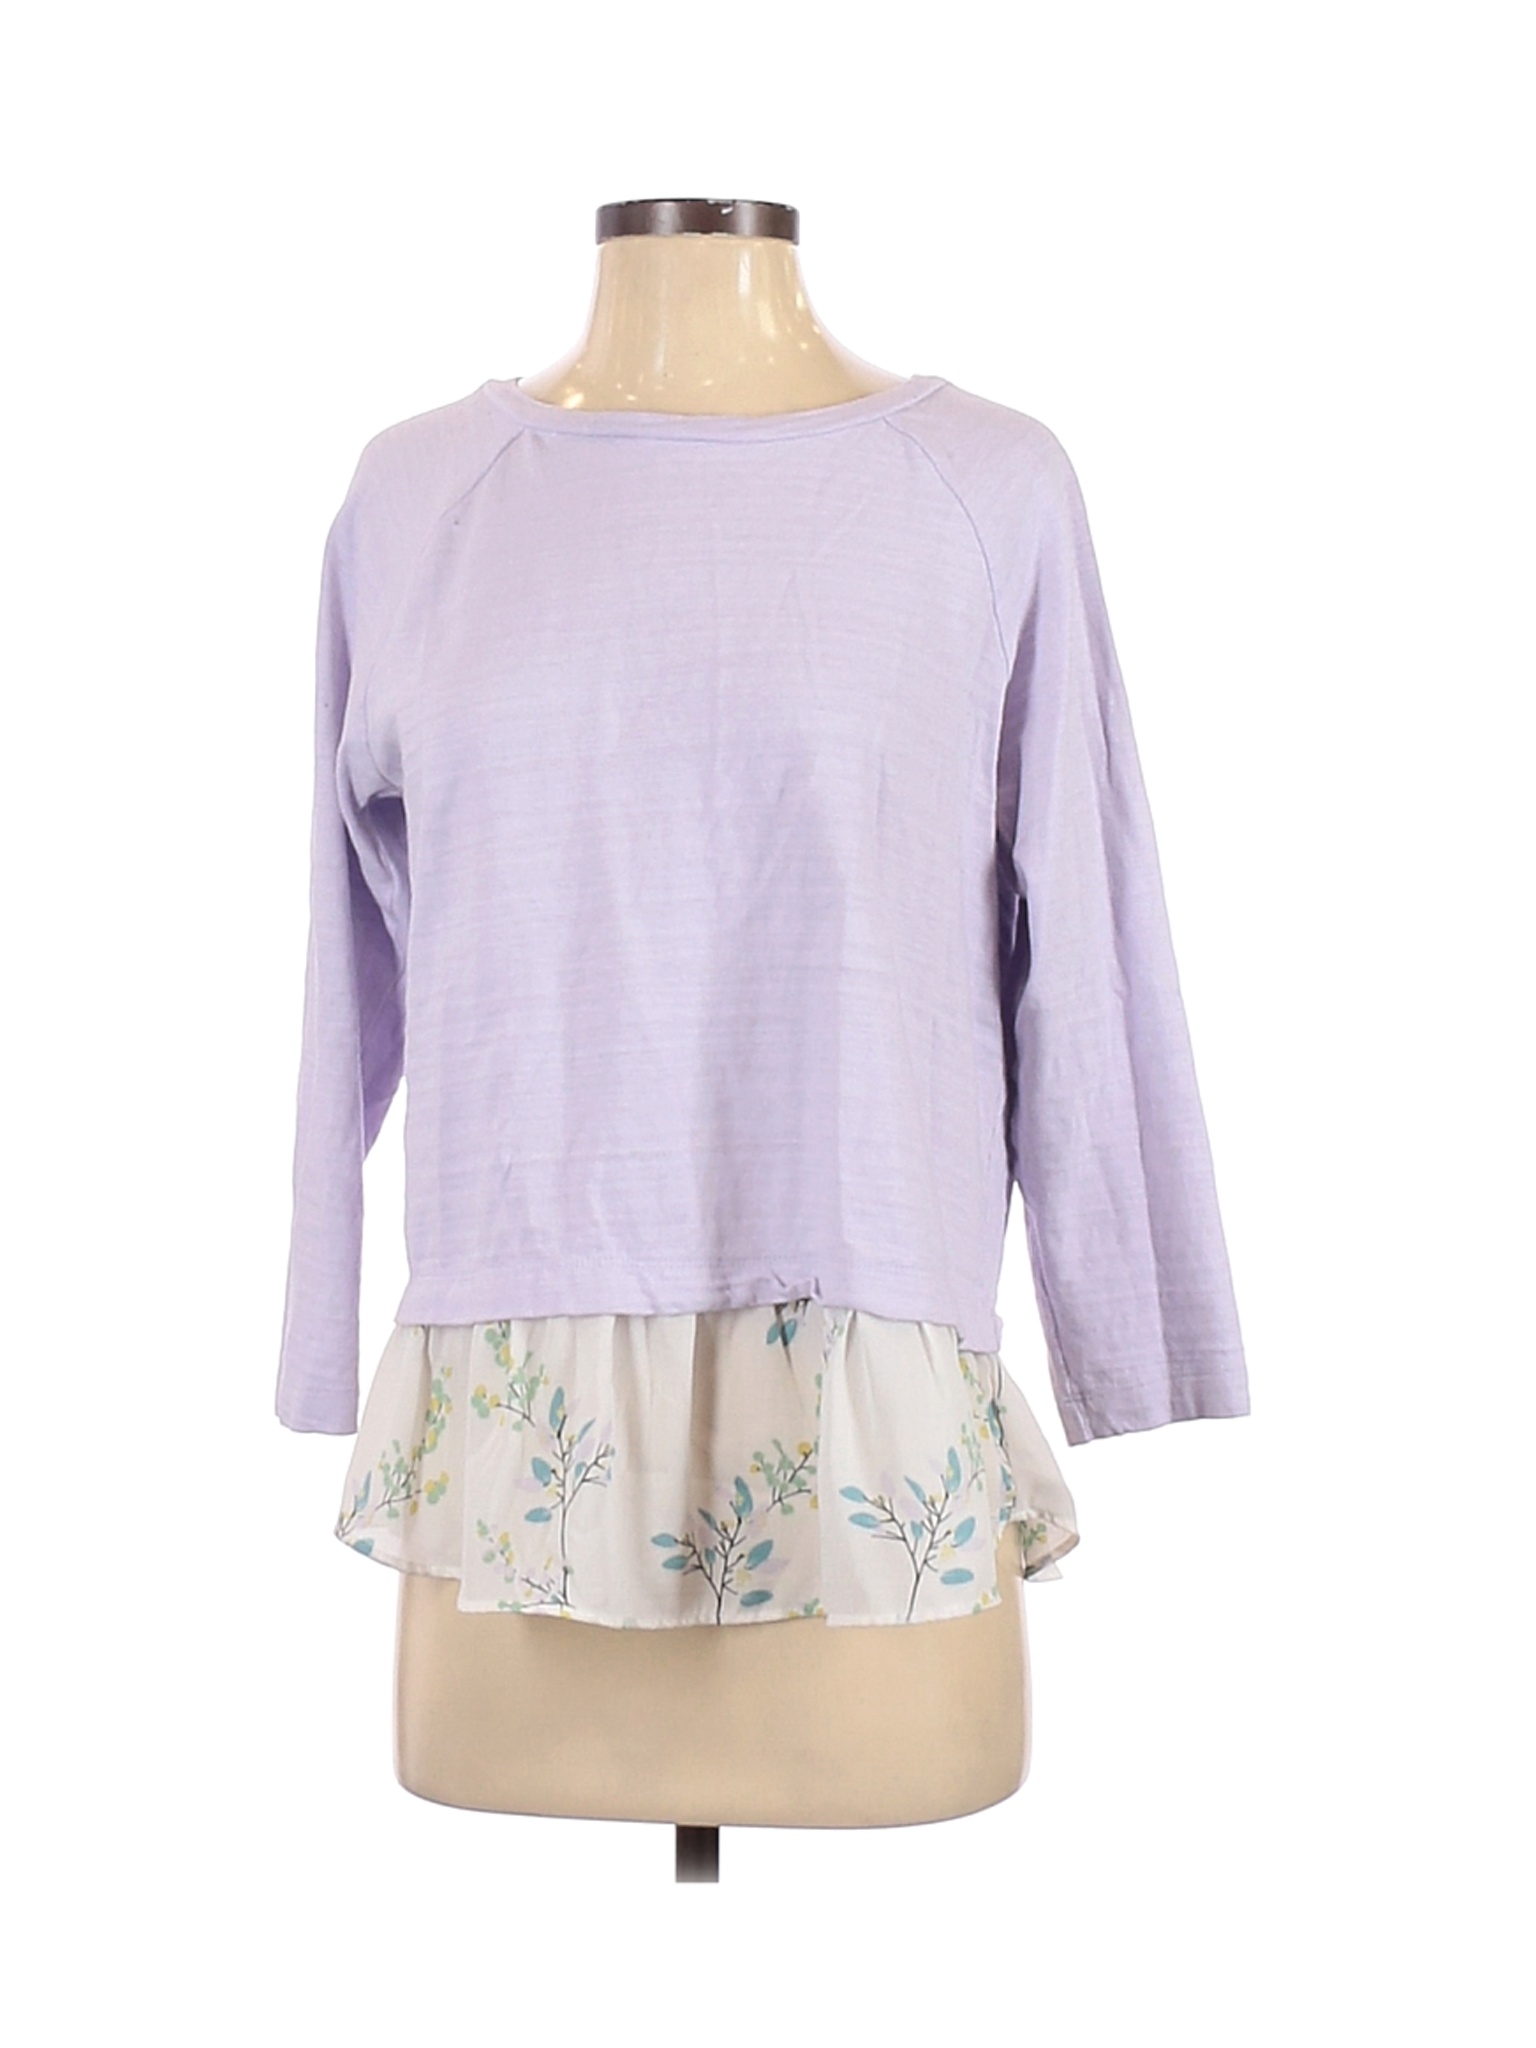 Ann Taylor LOFT Women Purple Pullover Sweater S | eBay